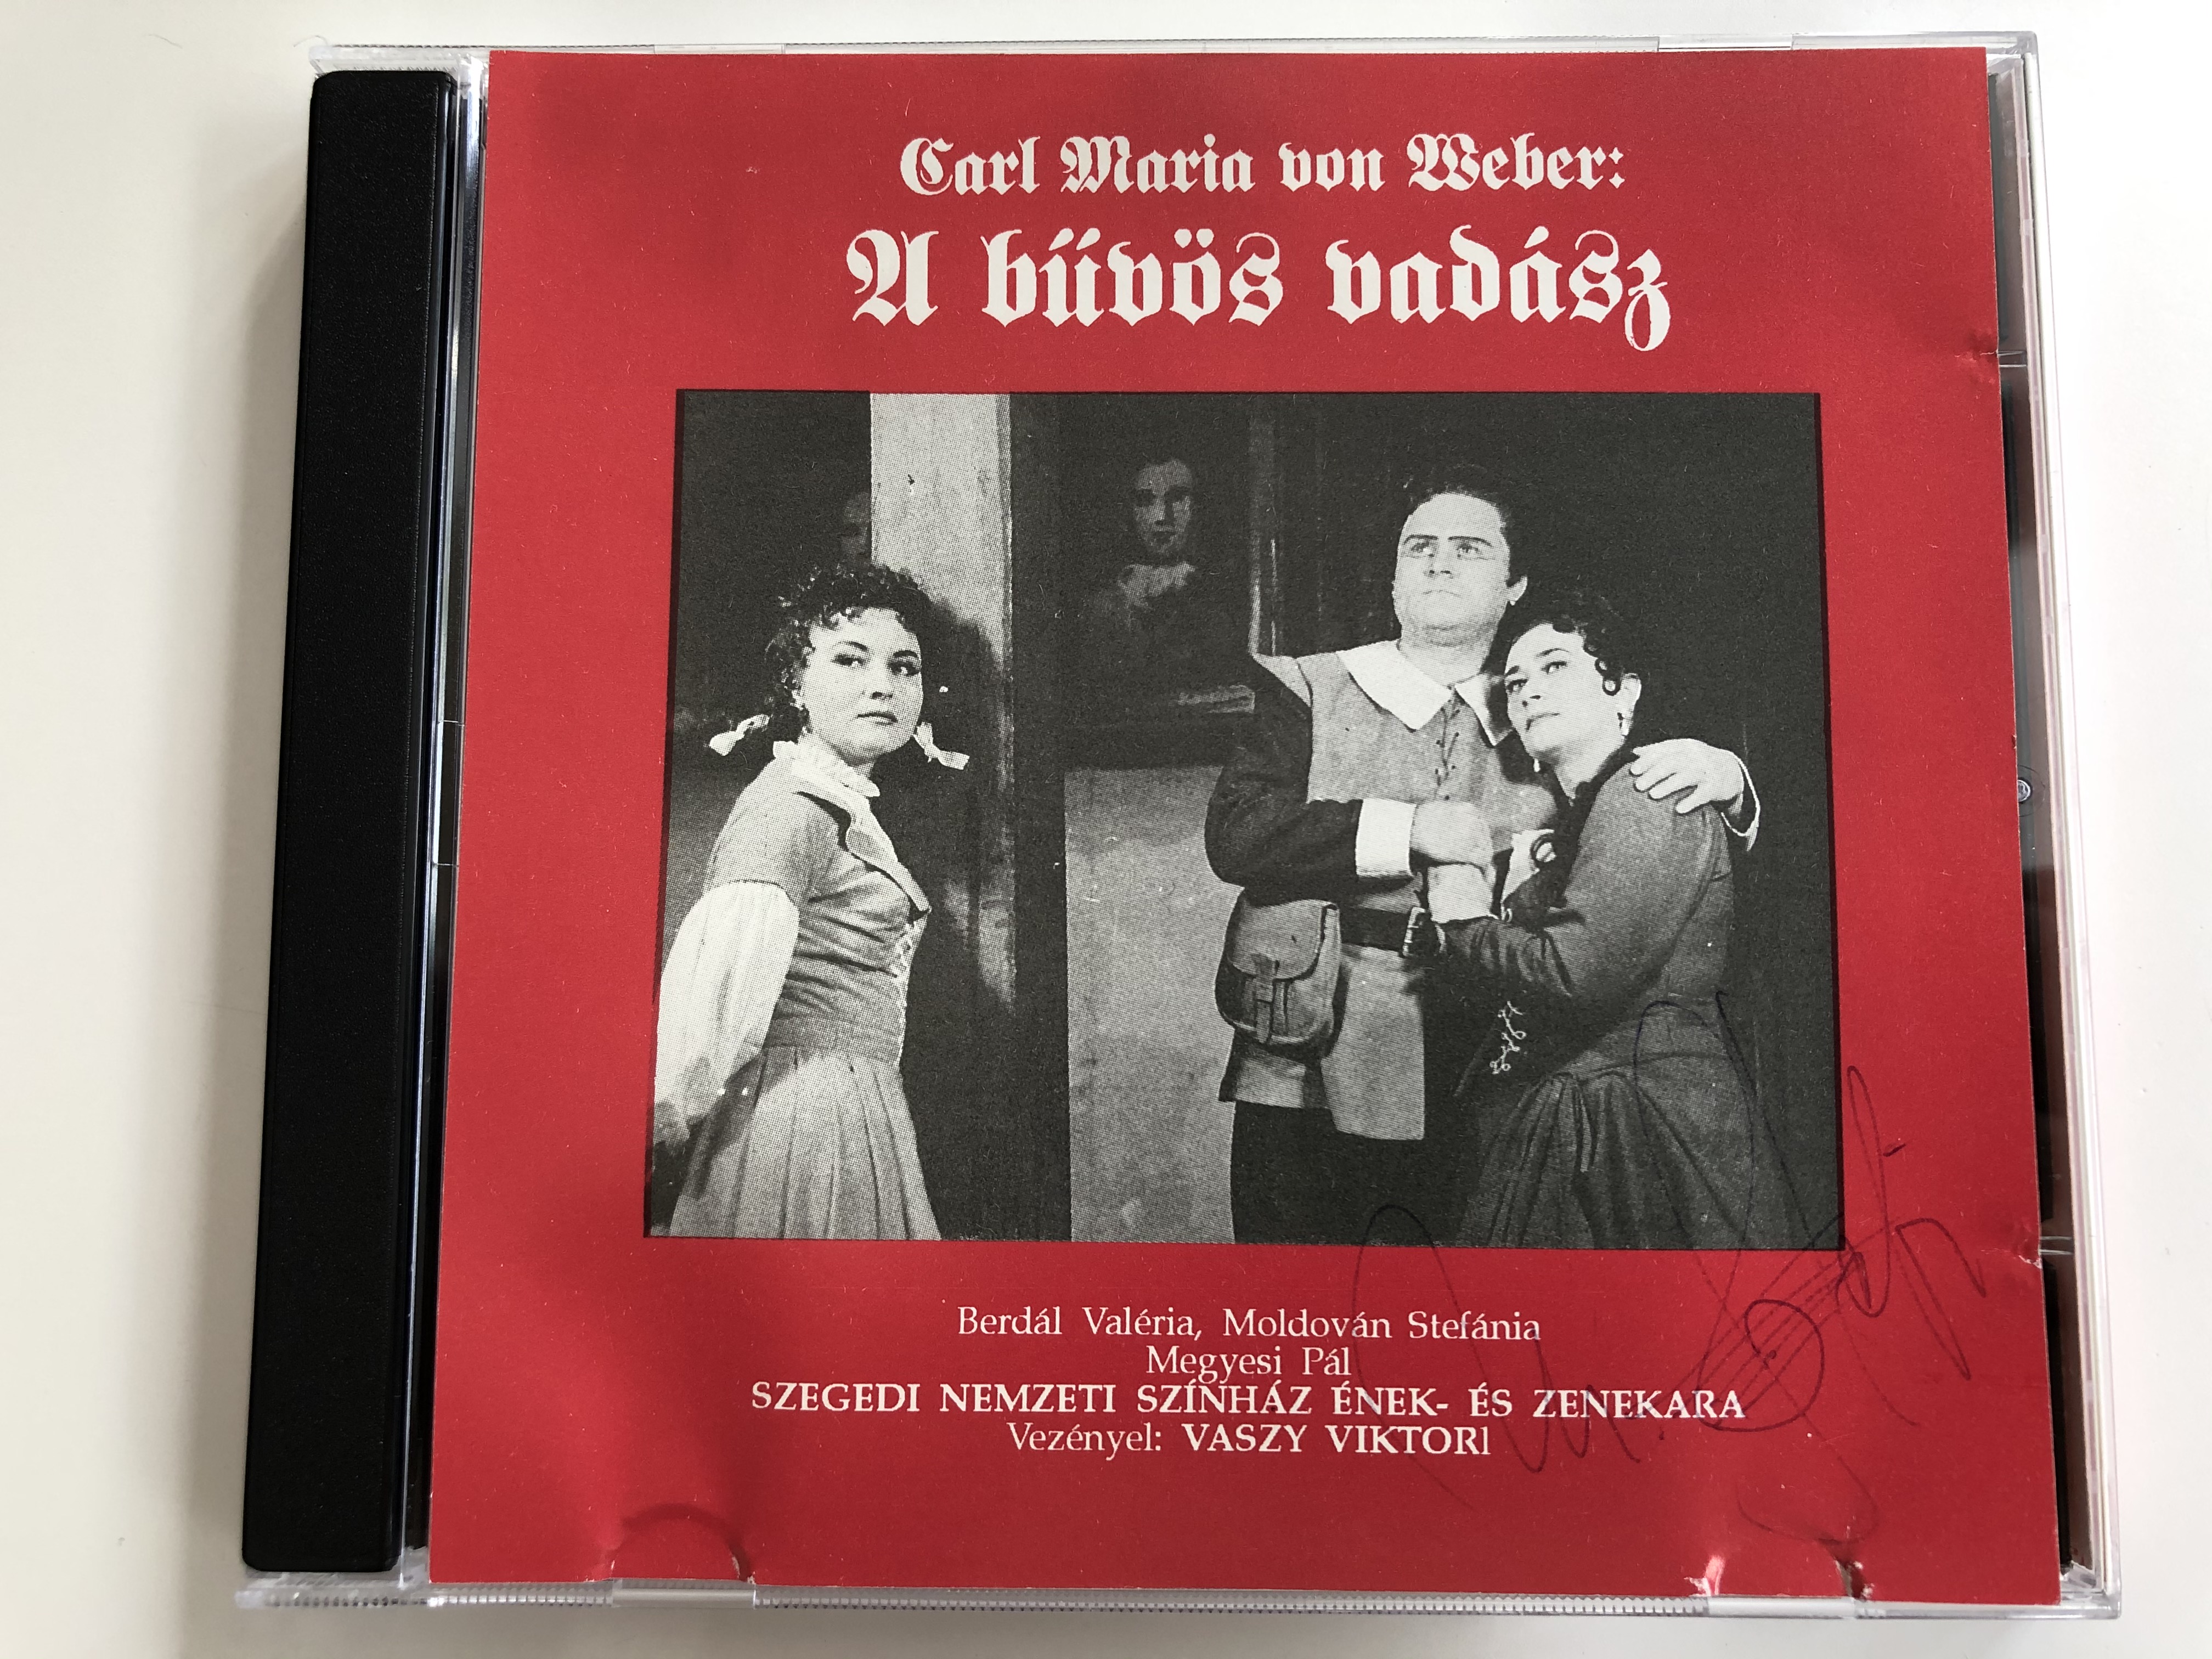 carl-maria-von-weber-a-buvos-vadasz-berdal-valeria-moldovan-stefania-megyesi-pal-szegedi-nemzeti-szinhaz-enek-es-zenekara-conducted-vaszy-viktori-otp-bank-audio-cd-1992-stereo-hun-001-1-.jpg